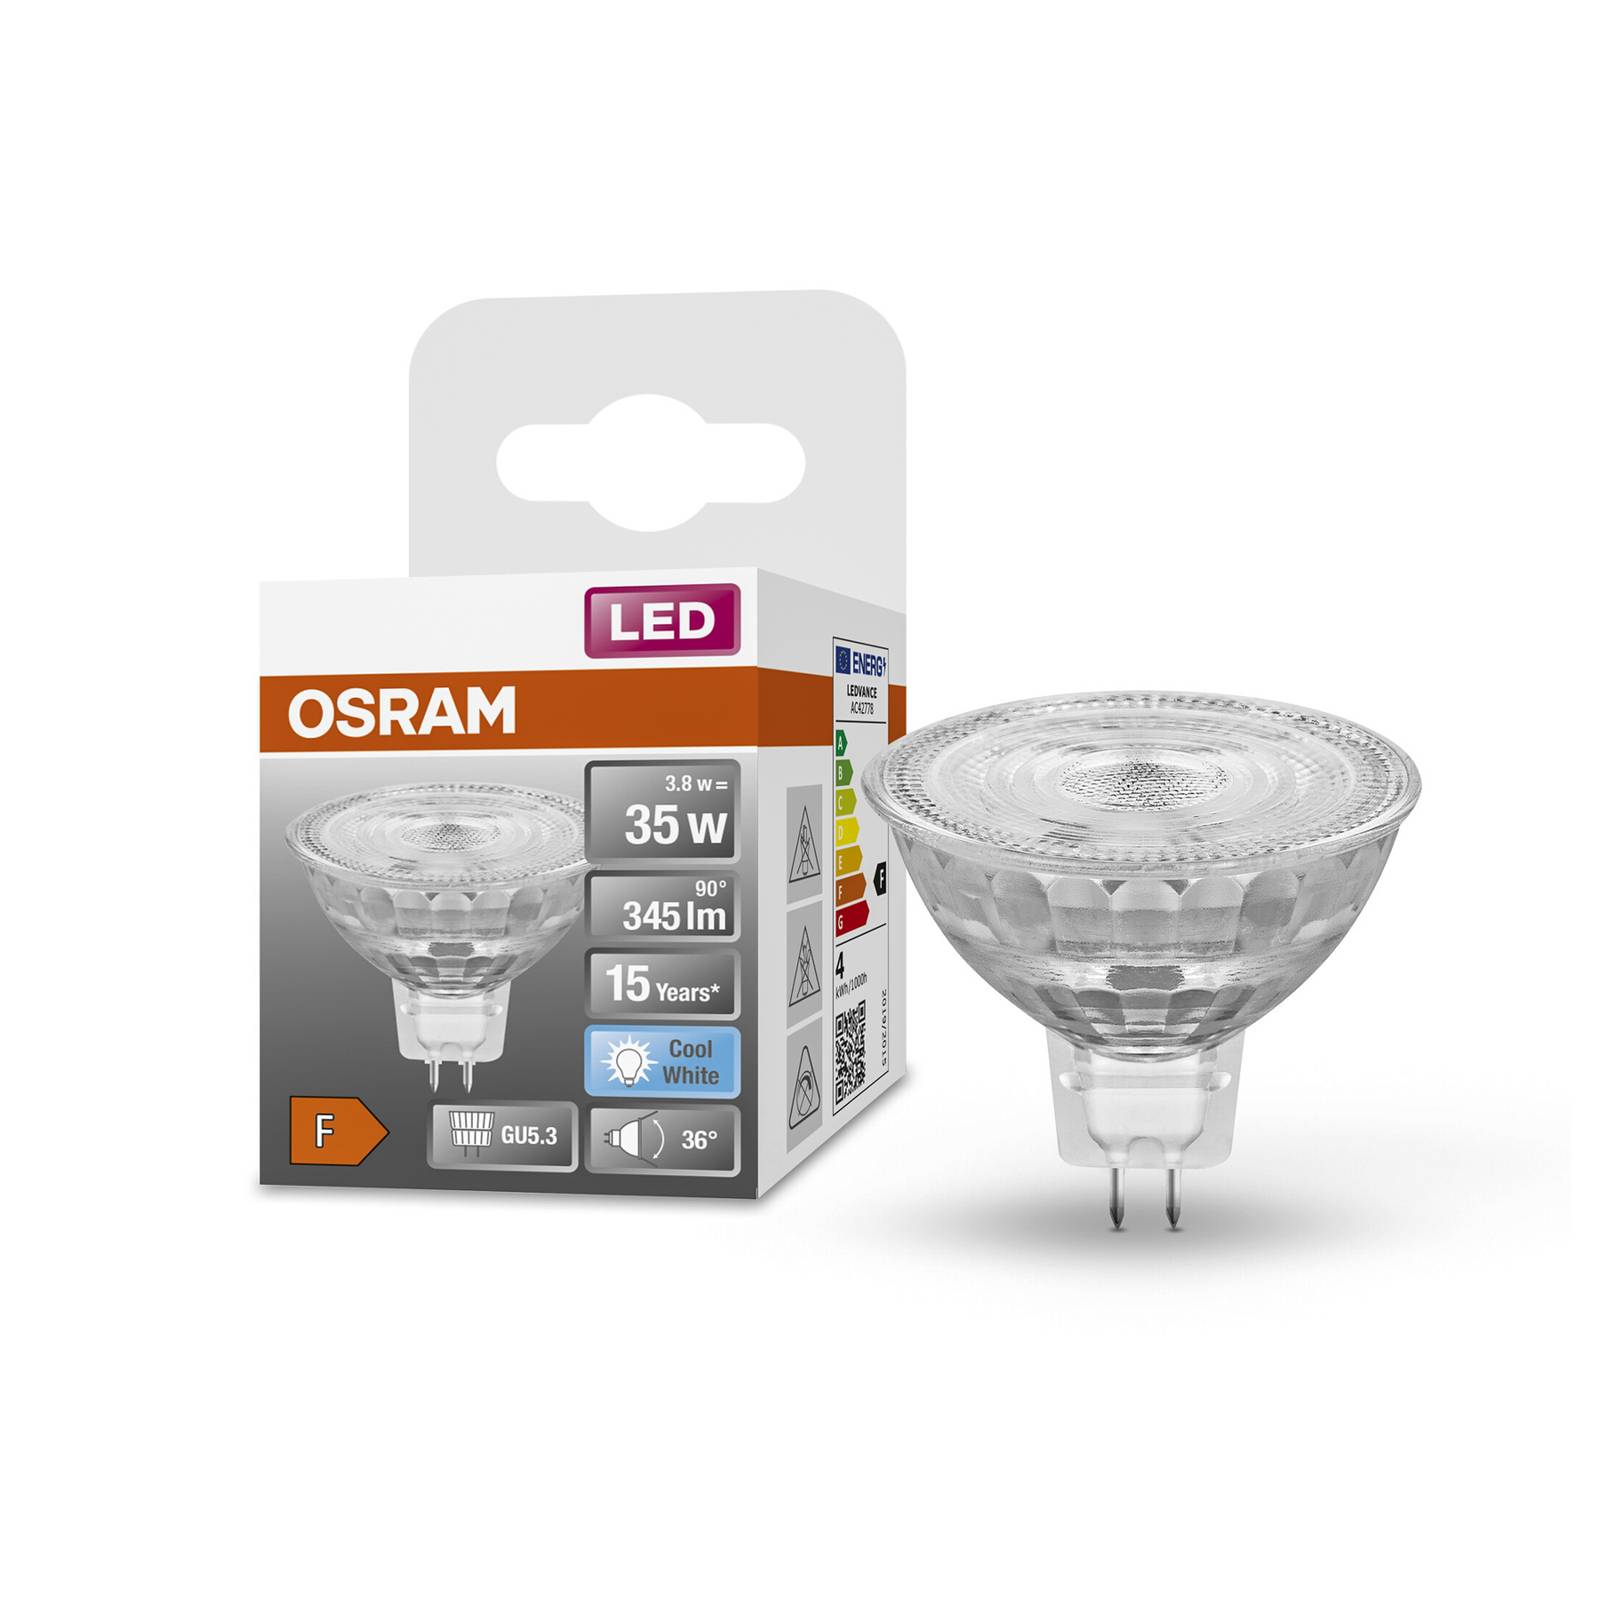 OSRAM OSRAM LED reflektor GU5,3 3,8W Star 36° 4 000K